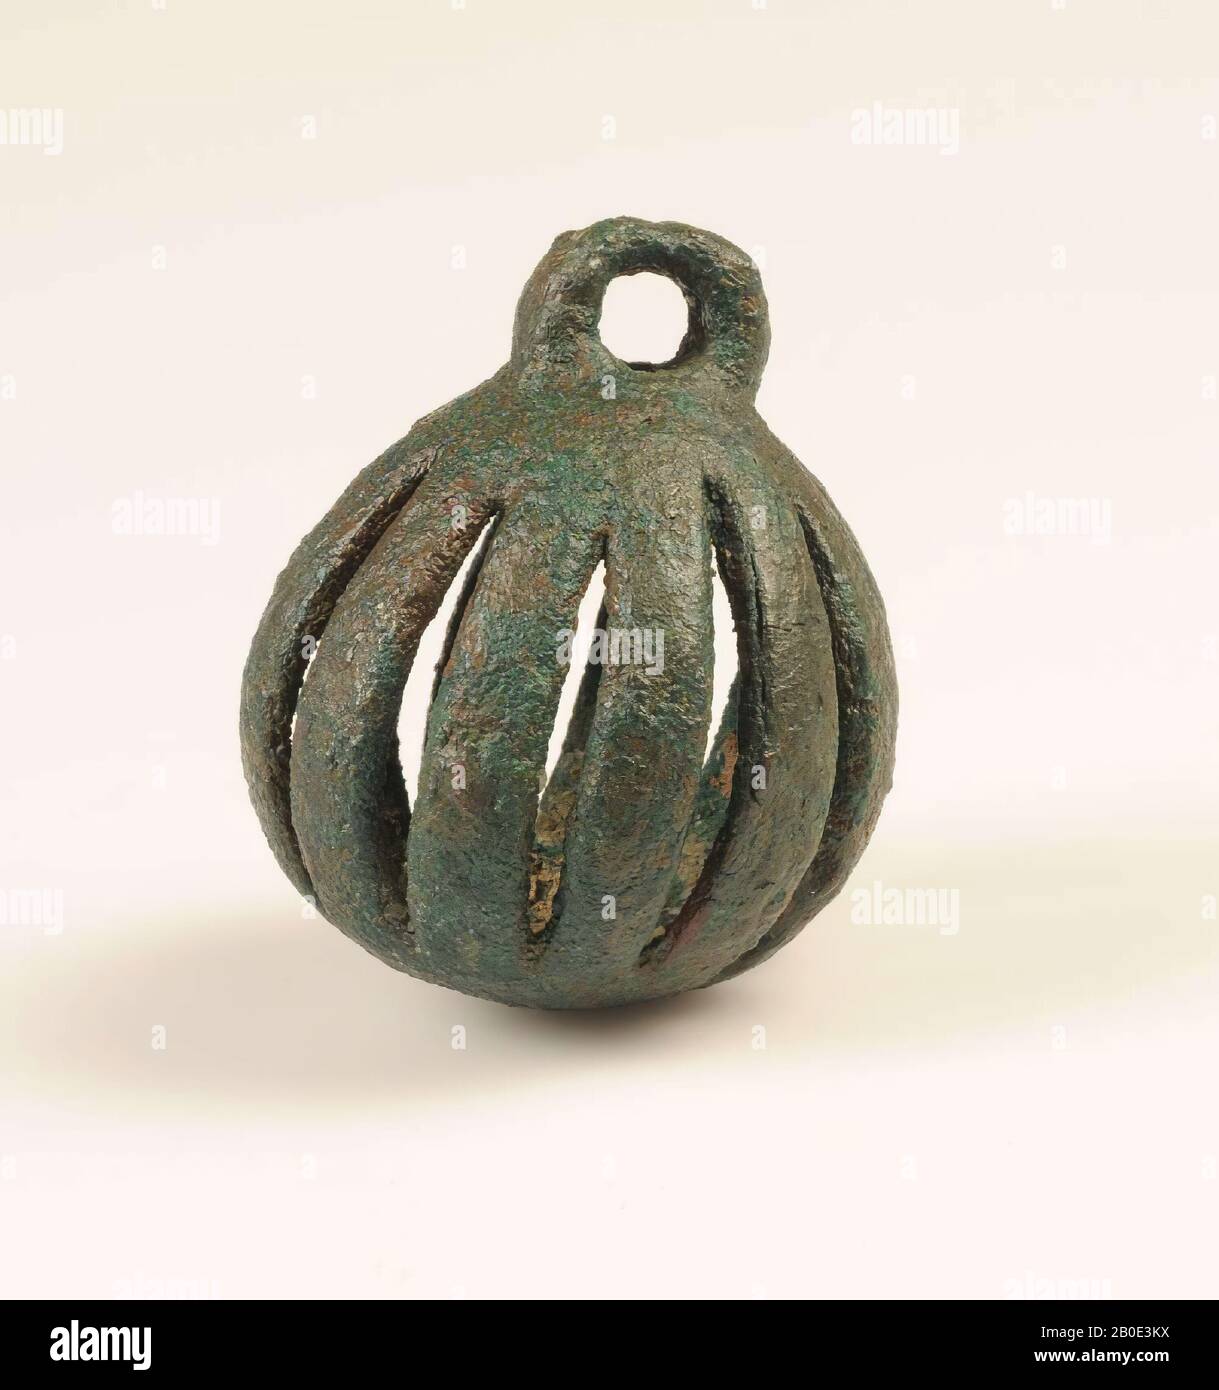 Eine kugelförmige Bronzeglocke. Die abgeschnittene Wand bildet vertikale Streifen. Oben ist ein halbrundes Auge sichtbar und unten ein kleines Piercing. Möglicherweise ein Teil eines Gurtzeugs, Pferdegeschirr, Schmuck, Metall, Bronze, H 6,5 cm, D 5,6 cm, Eisenzeit II 1000-600 v. Chr., Iran Stockfoto